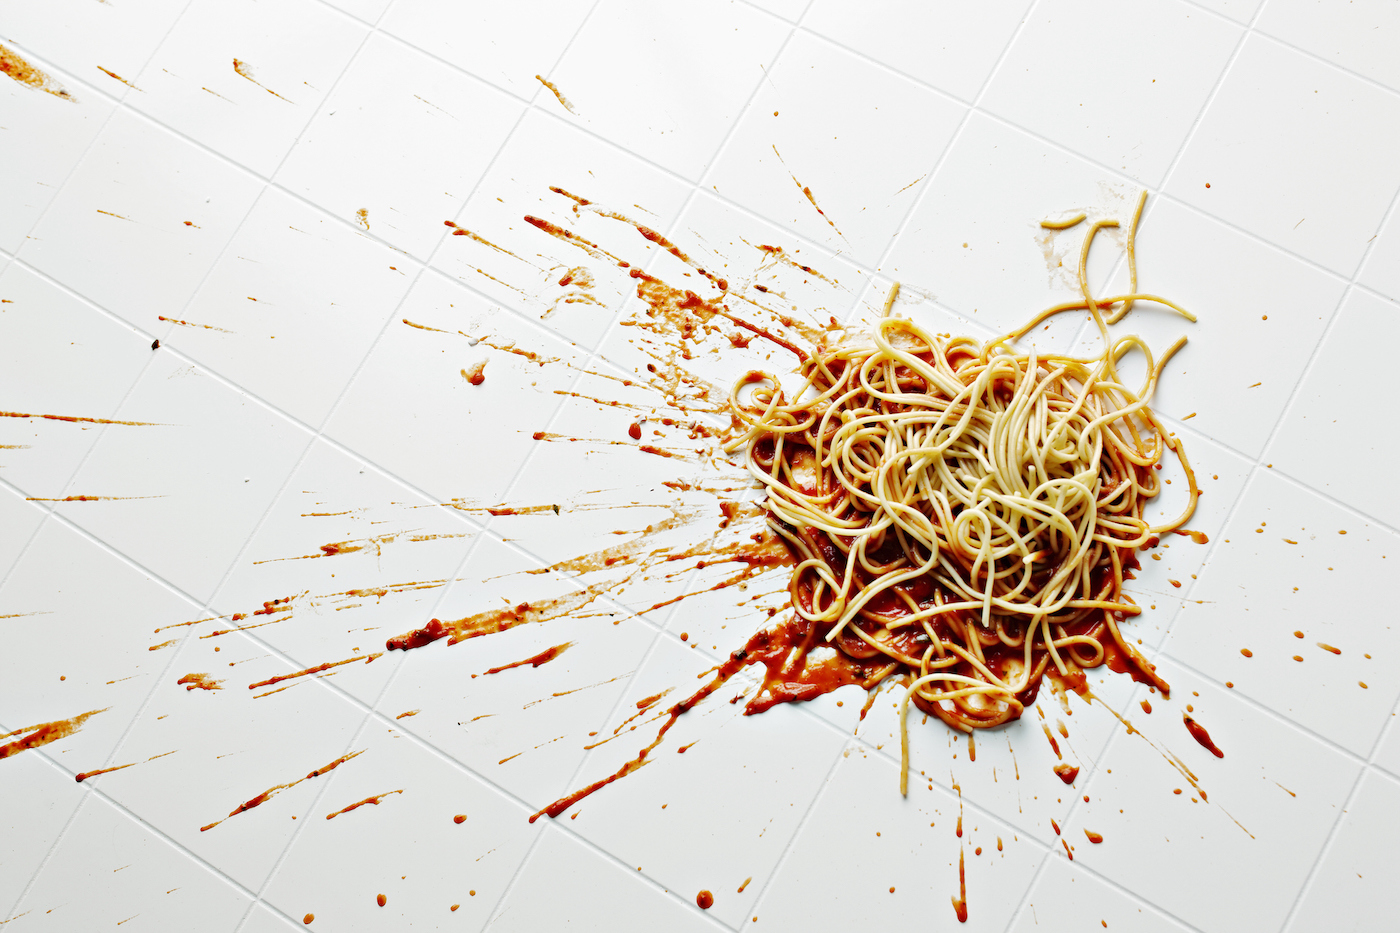 Spaghetti and sauce spilled on kitchen floor